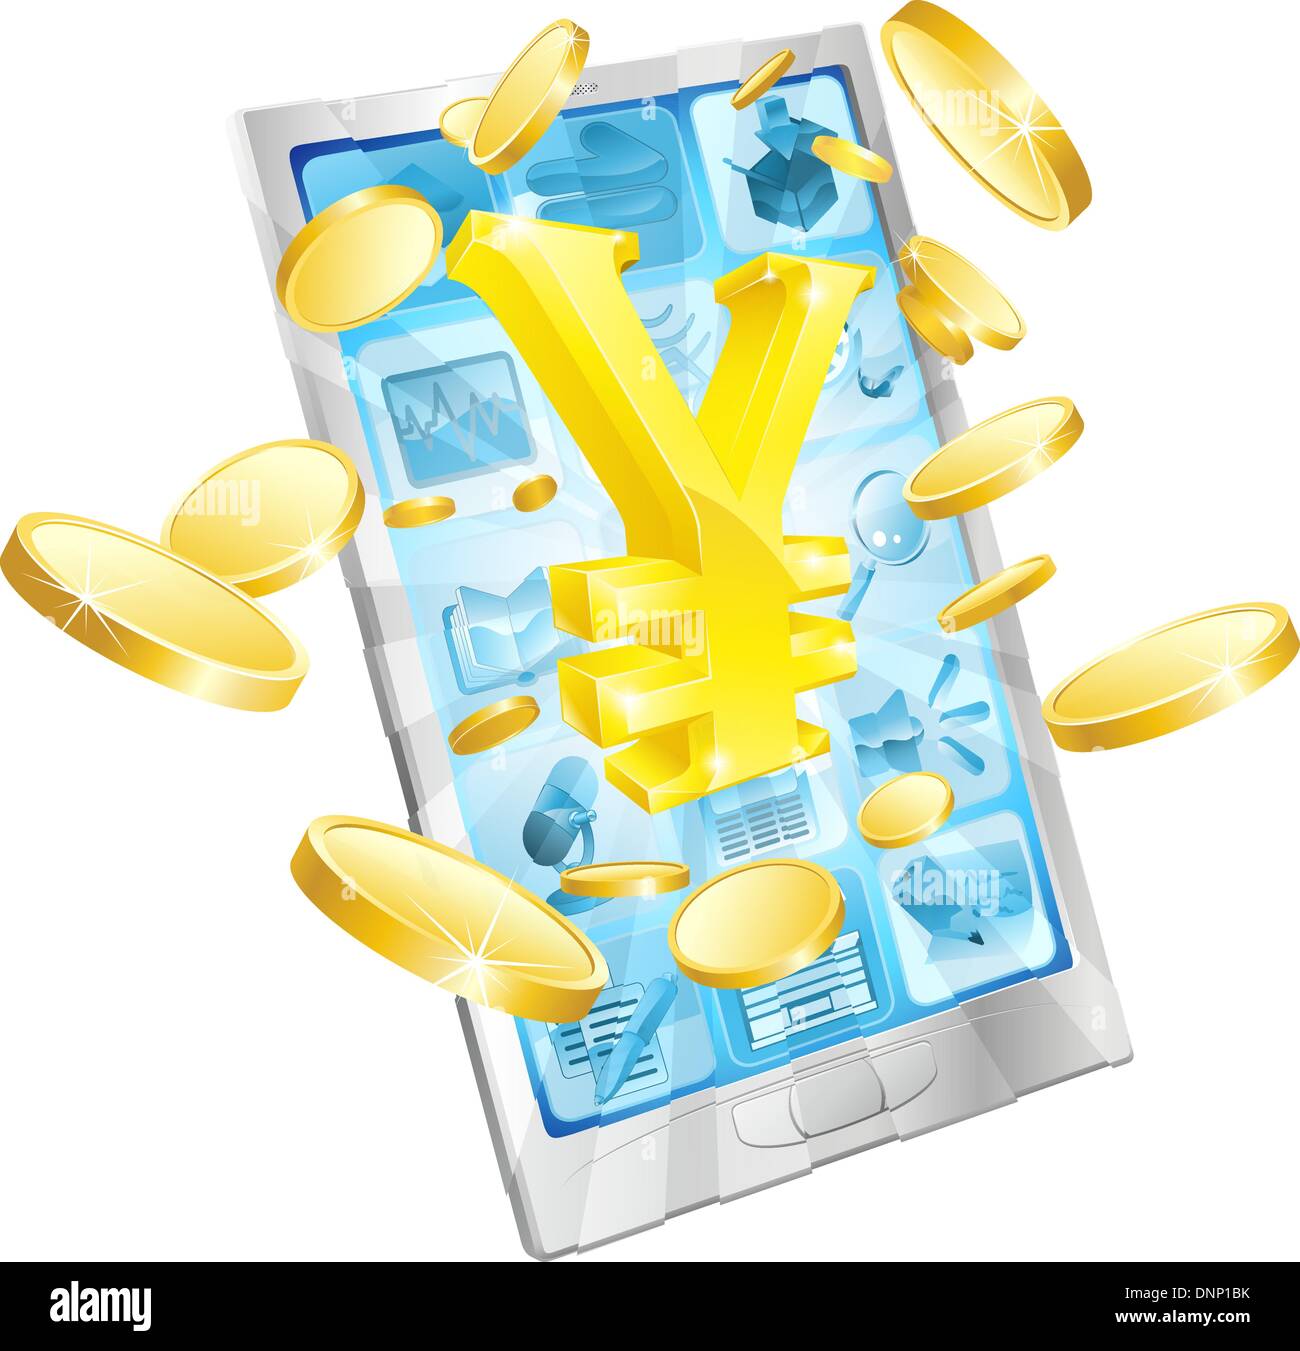 Yen de l'argent téléphone concept illustration de mobile cell phone avec de l'or et des pièces en euros yen sign Illustration de Vecteur